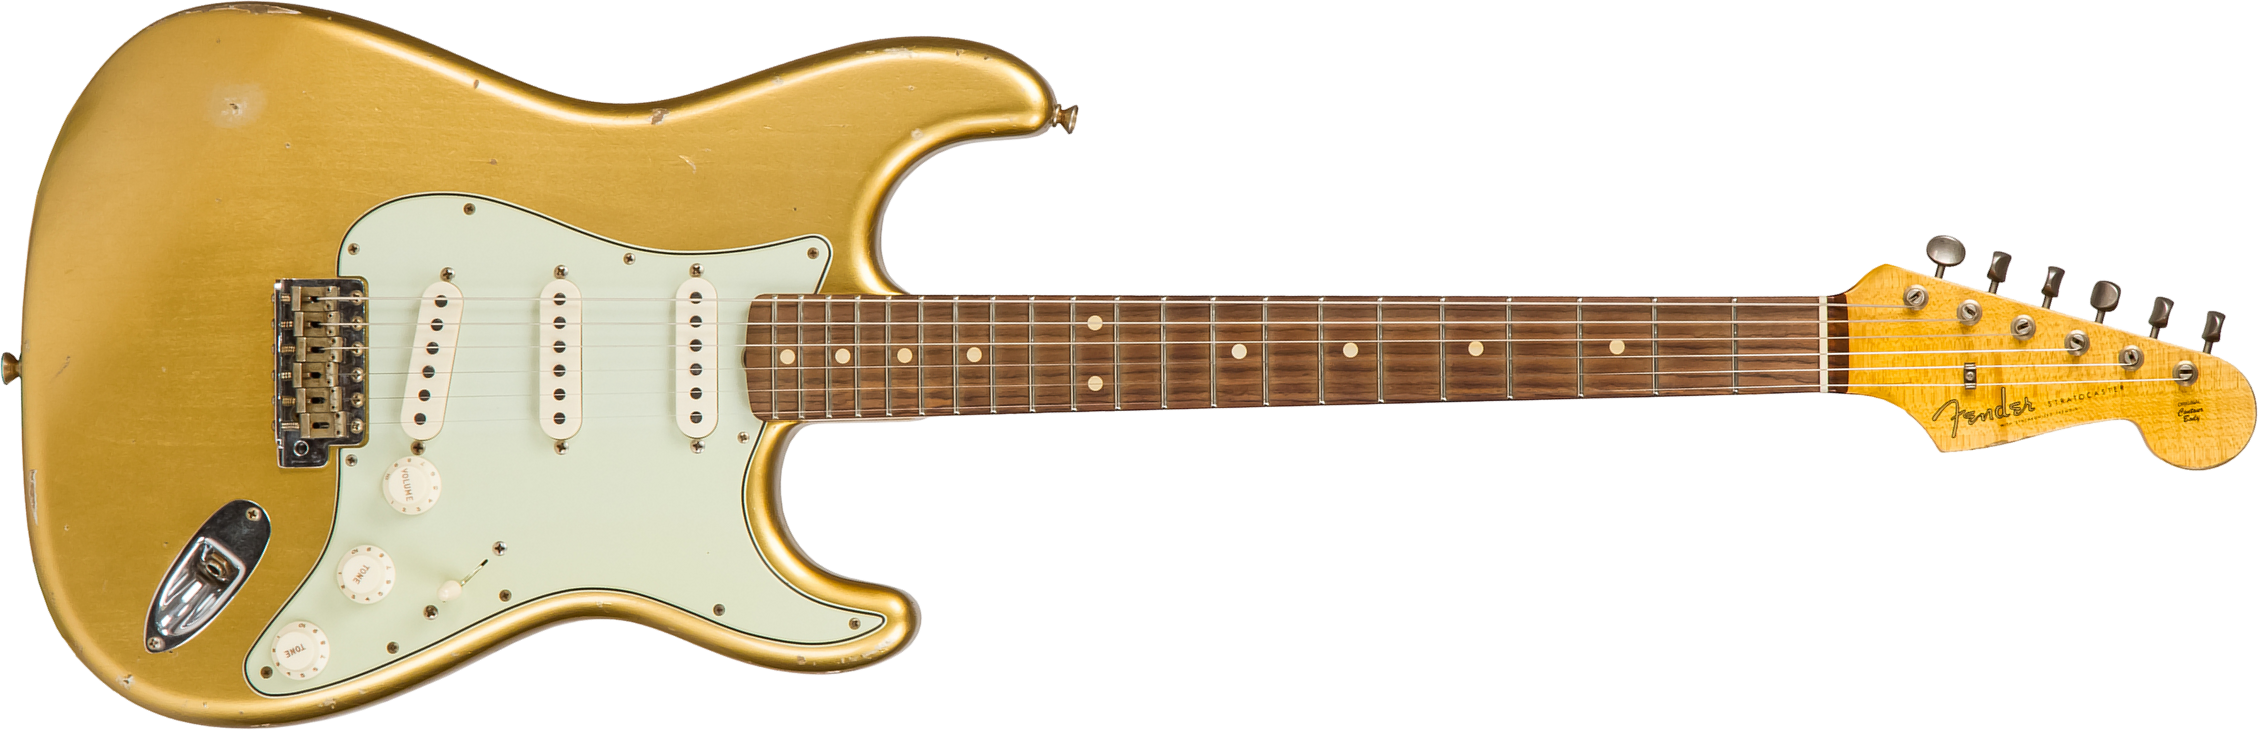 Fender Custom Shop Strat 1960 Rw #cz544406 - Relic Aztec Gold - Guitare Électrique Forme Str - Main picture